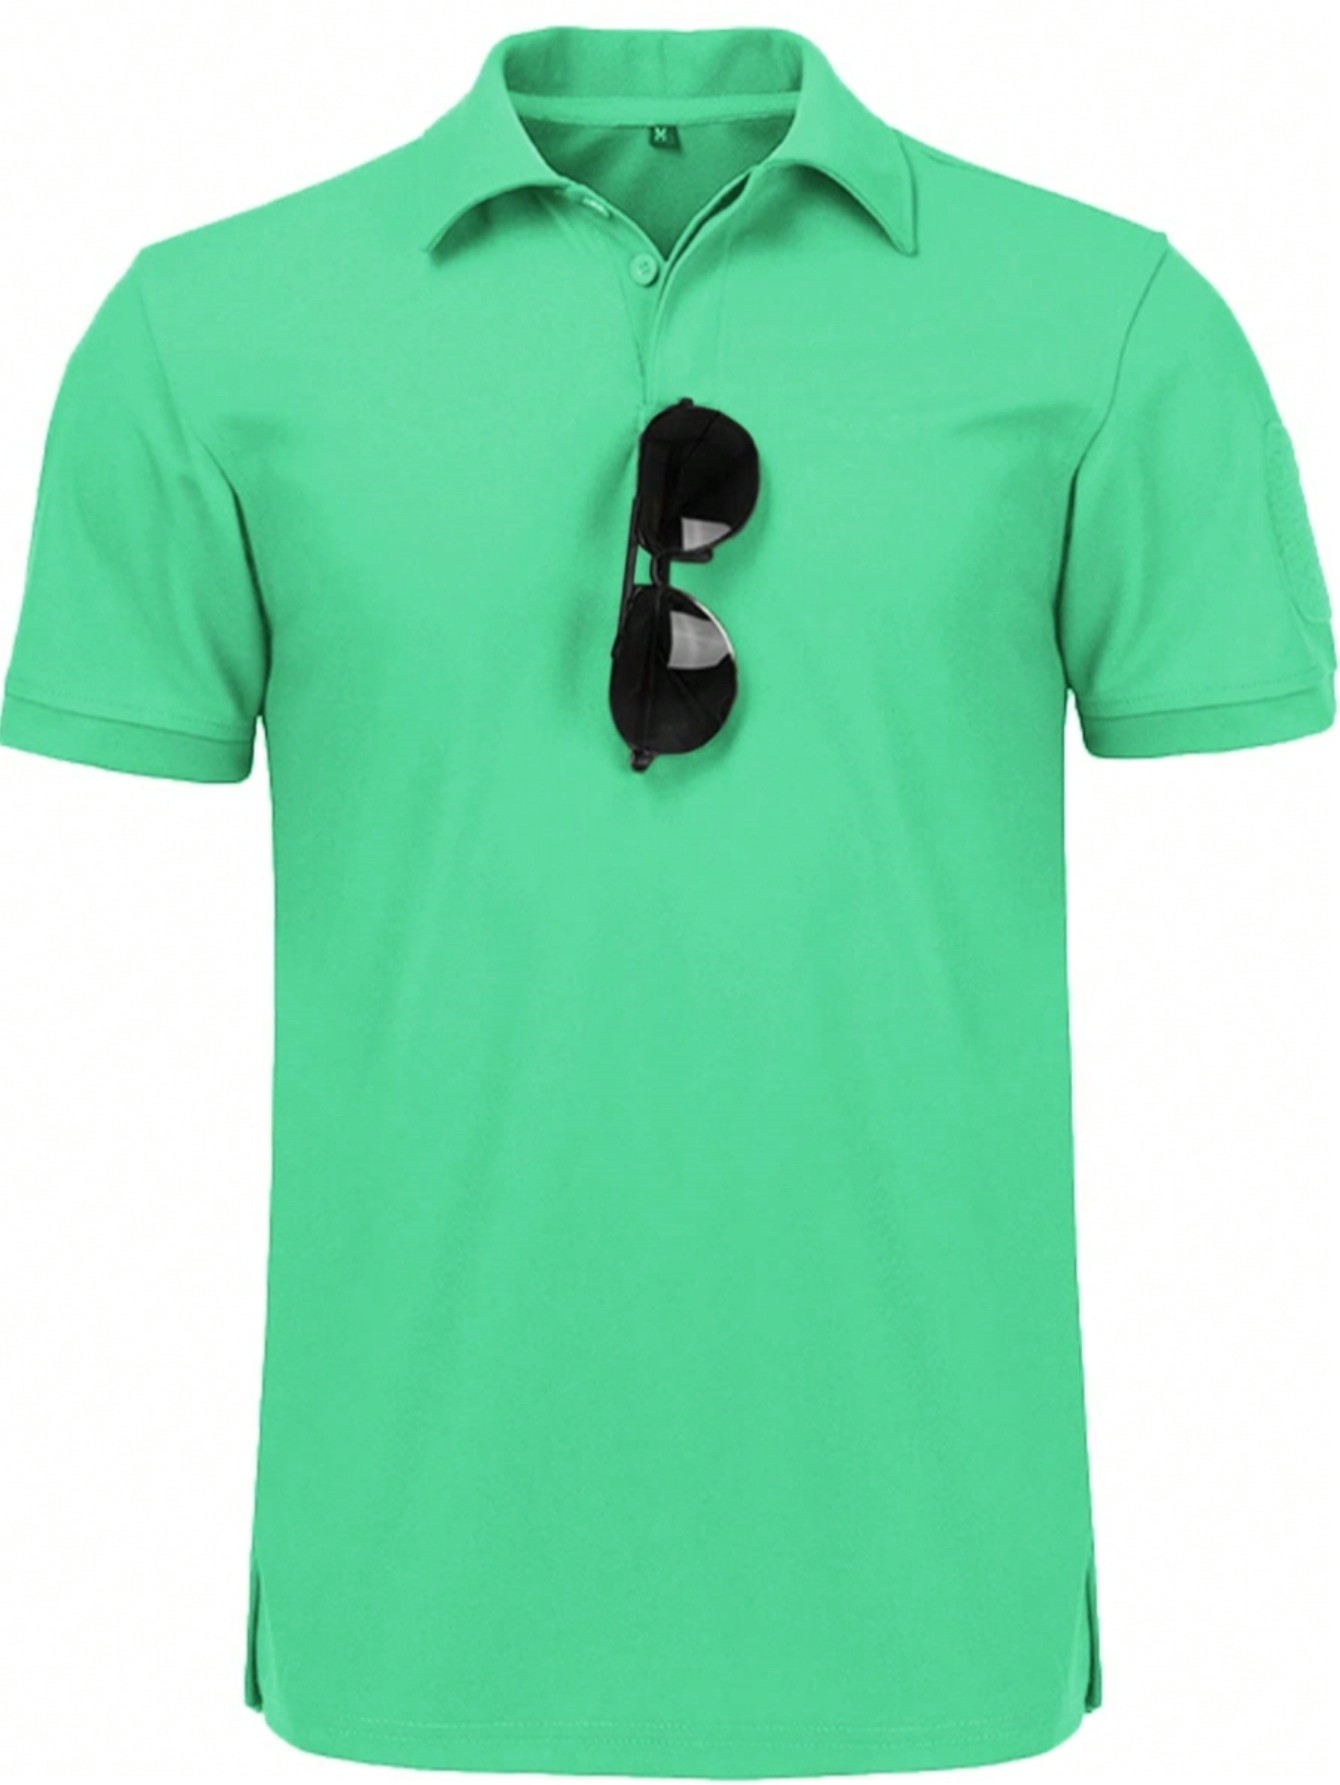 Мужская рубашка поло с коротким рукавом для отдыха, мятно-зеленый